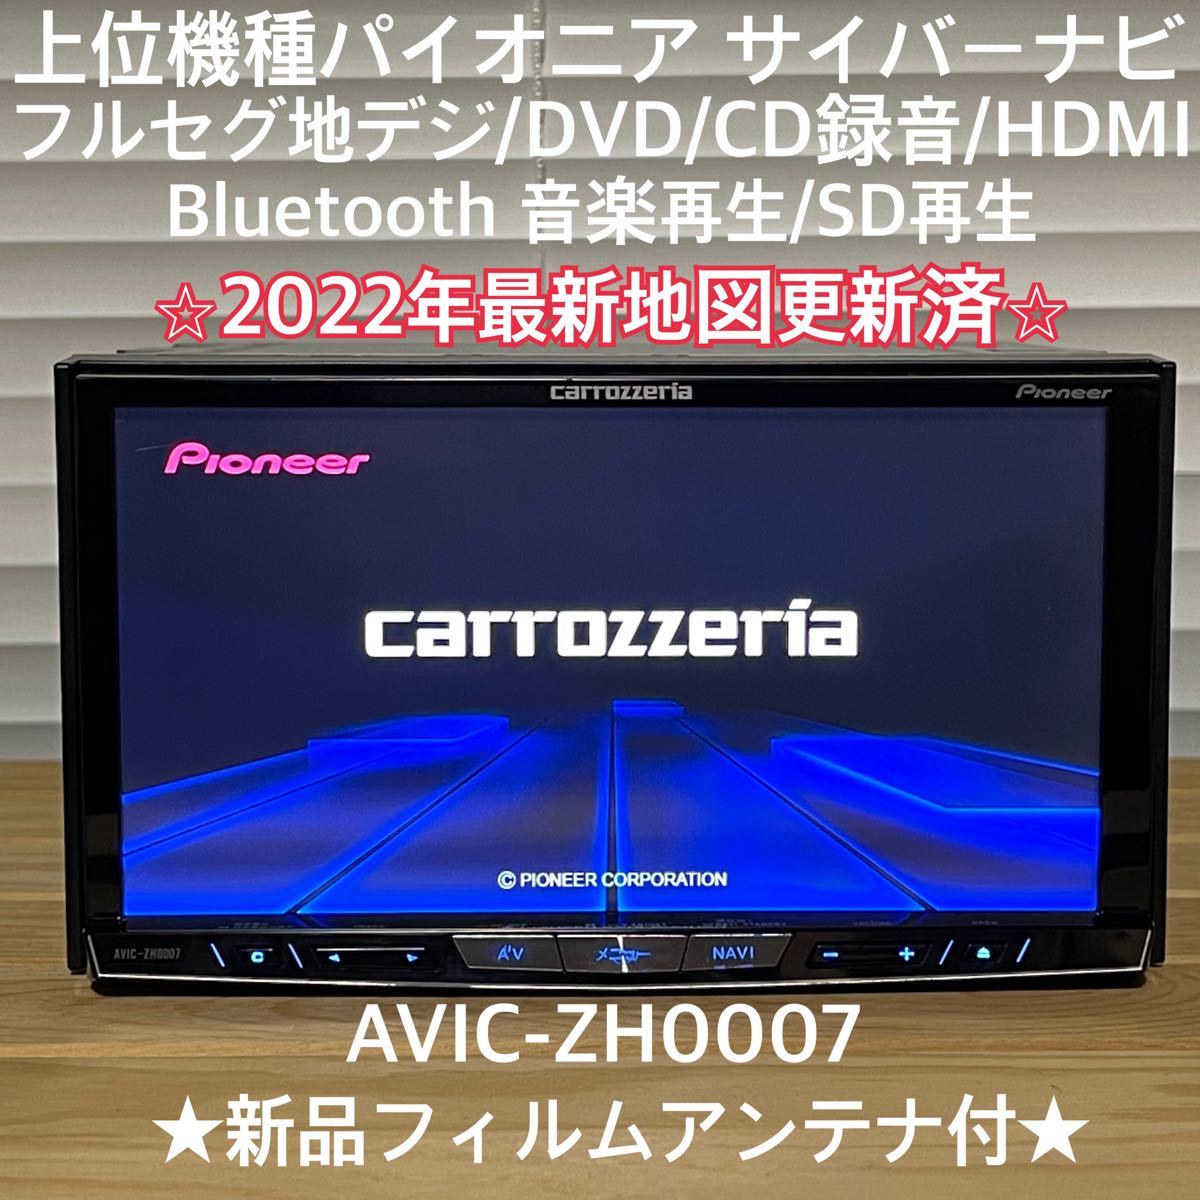 AVIC-ZH0007 パイオニア カロッツェリア HDD フルセグ 